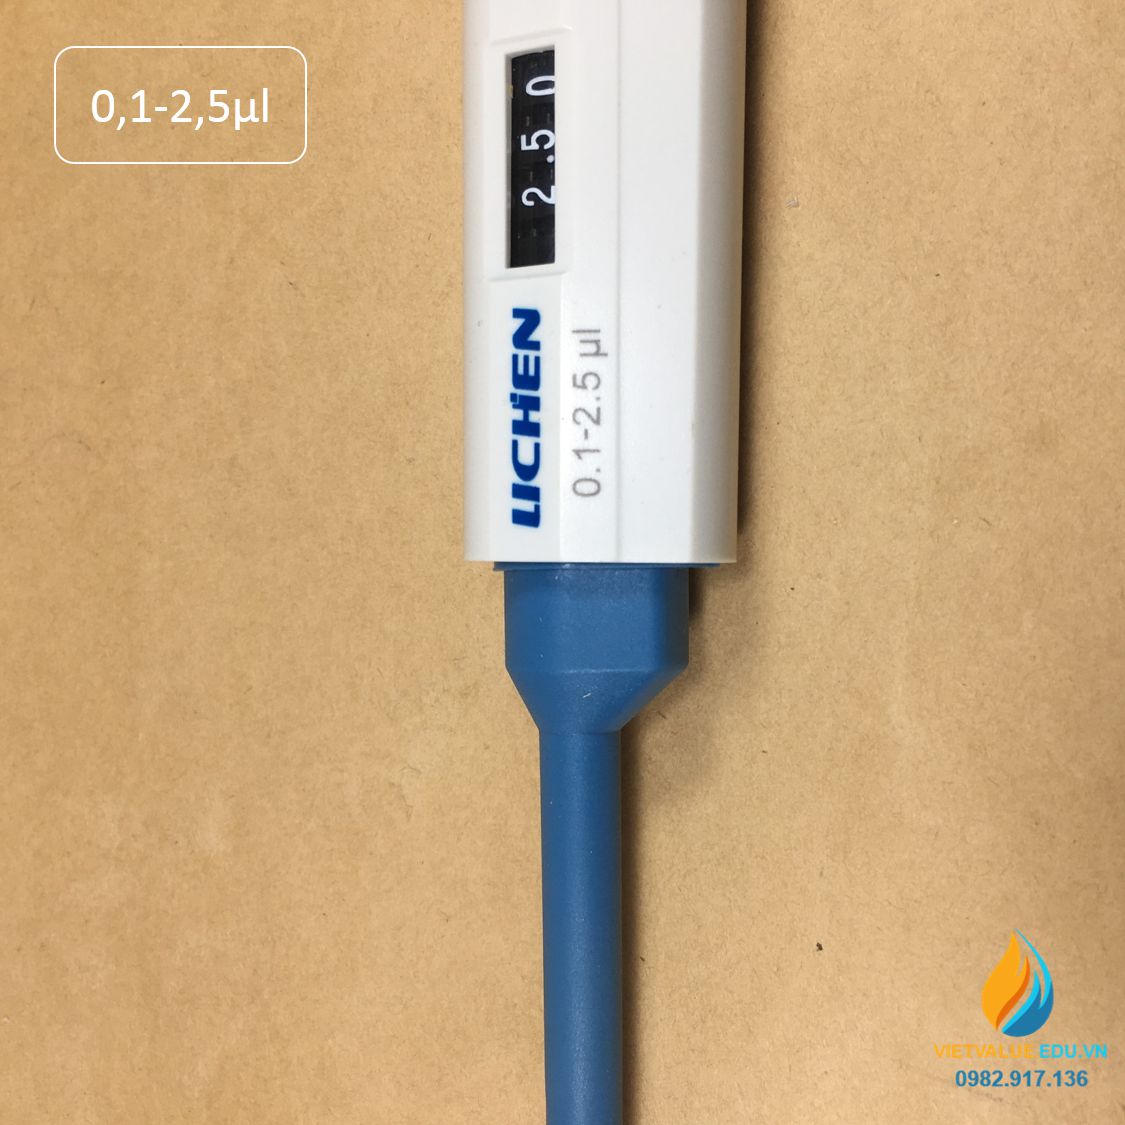 Micro pipet hút đơn kênh hãng Lichen đơn kênh mức hút từ 0,1-2,5μl